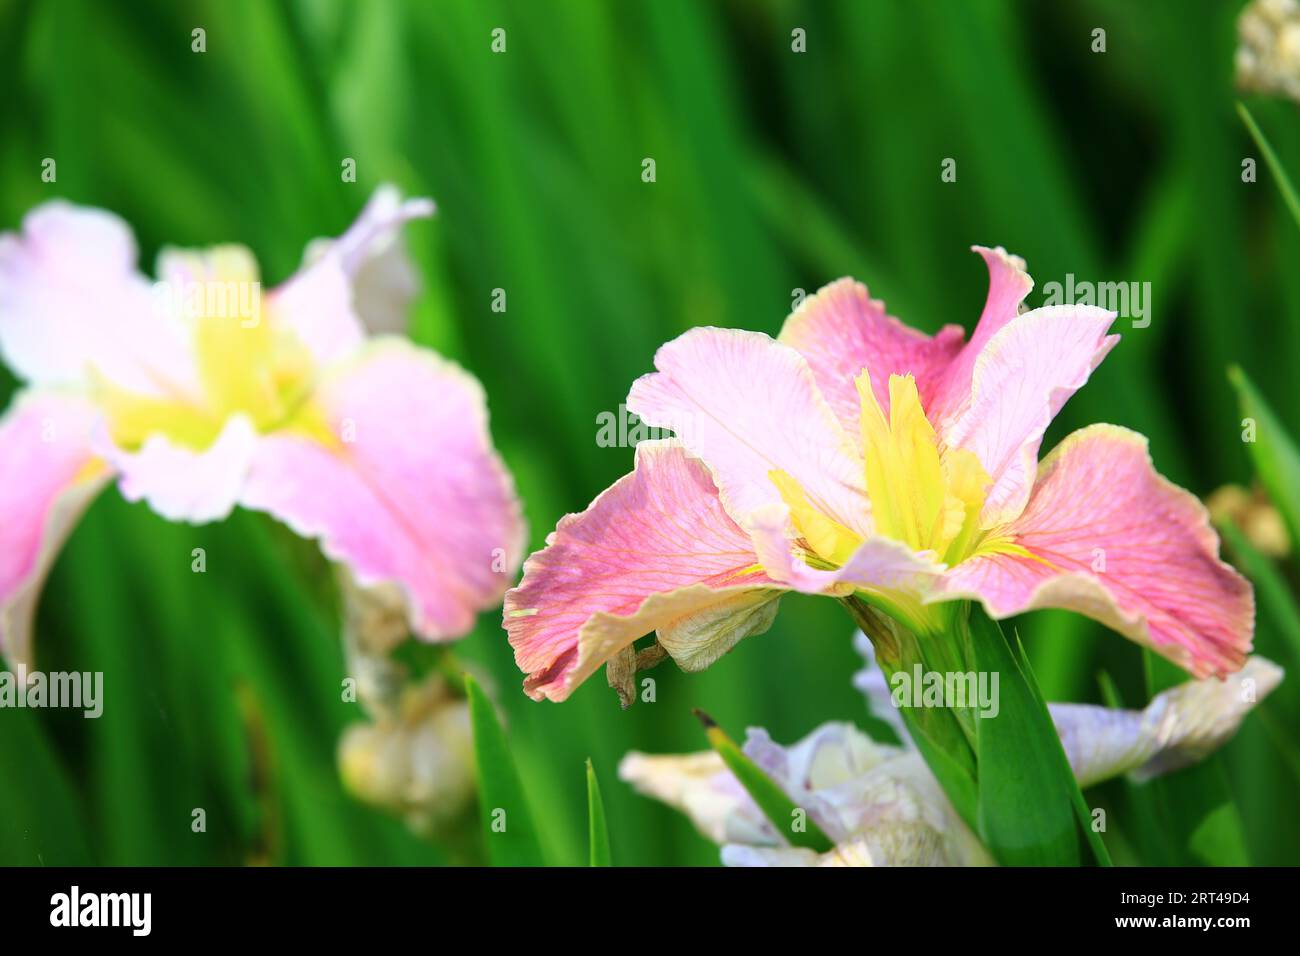 Fiori Iris o Flag o Gladdon o Fleur-de-lis, bianchi con fiori Iris rosa che fioriscono in giardino Foto Stock